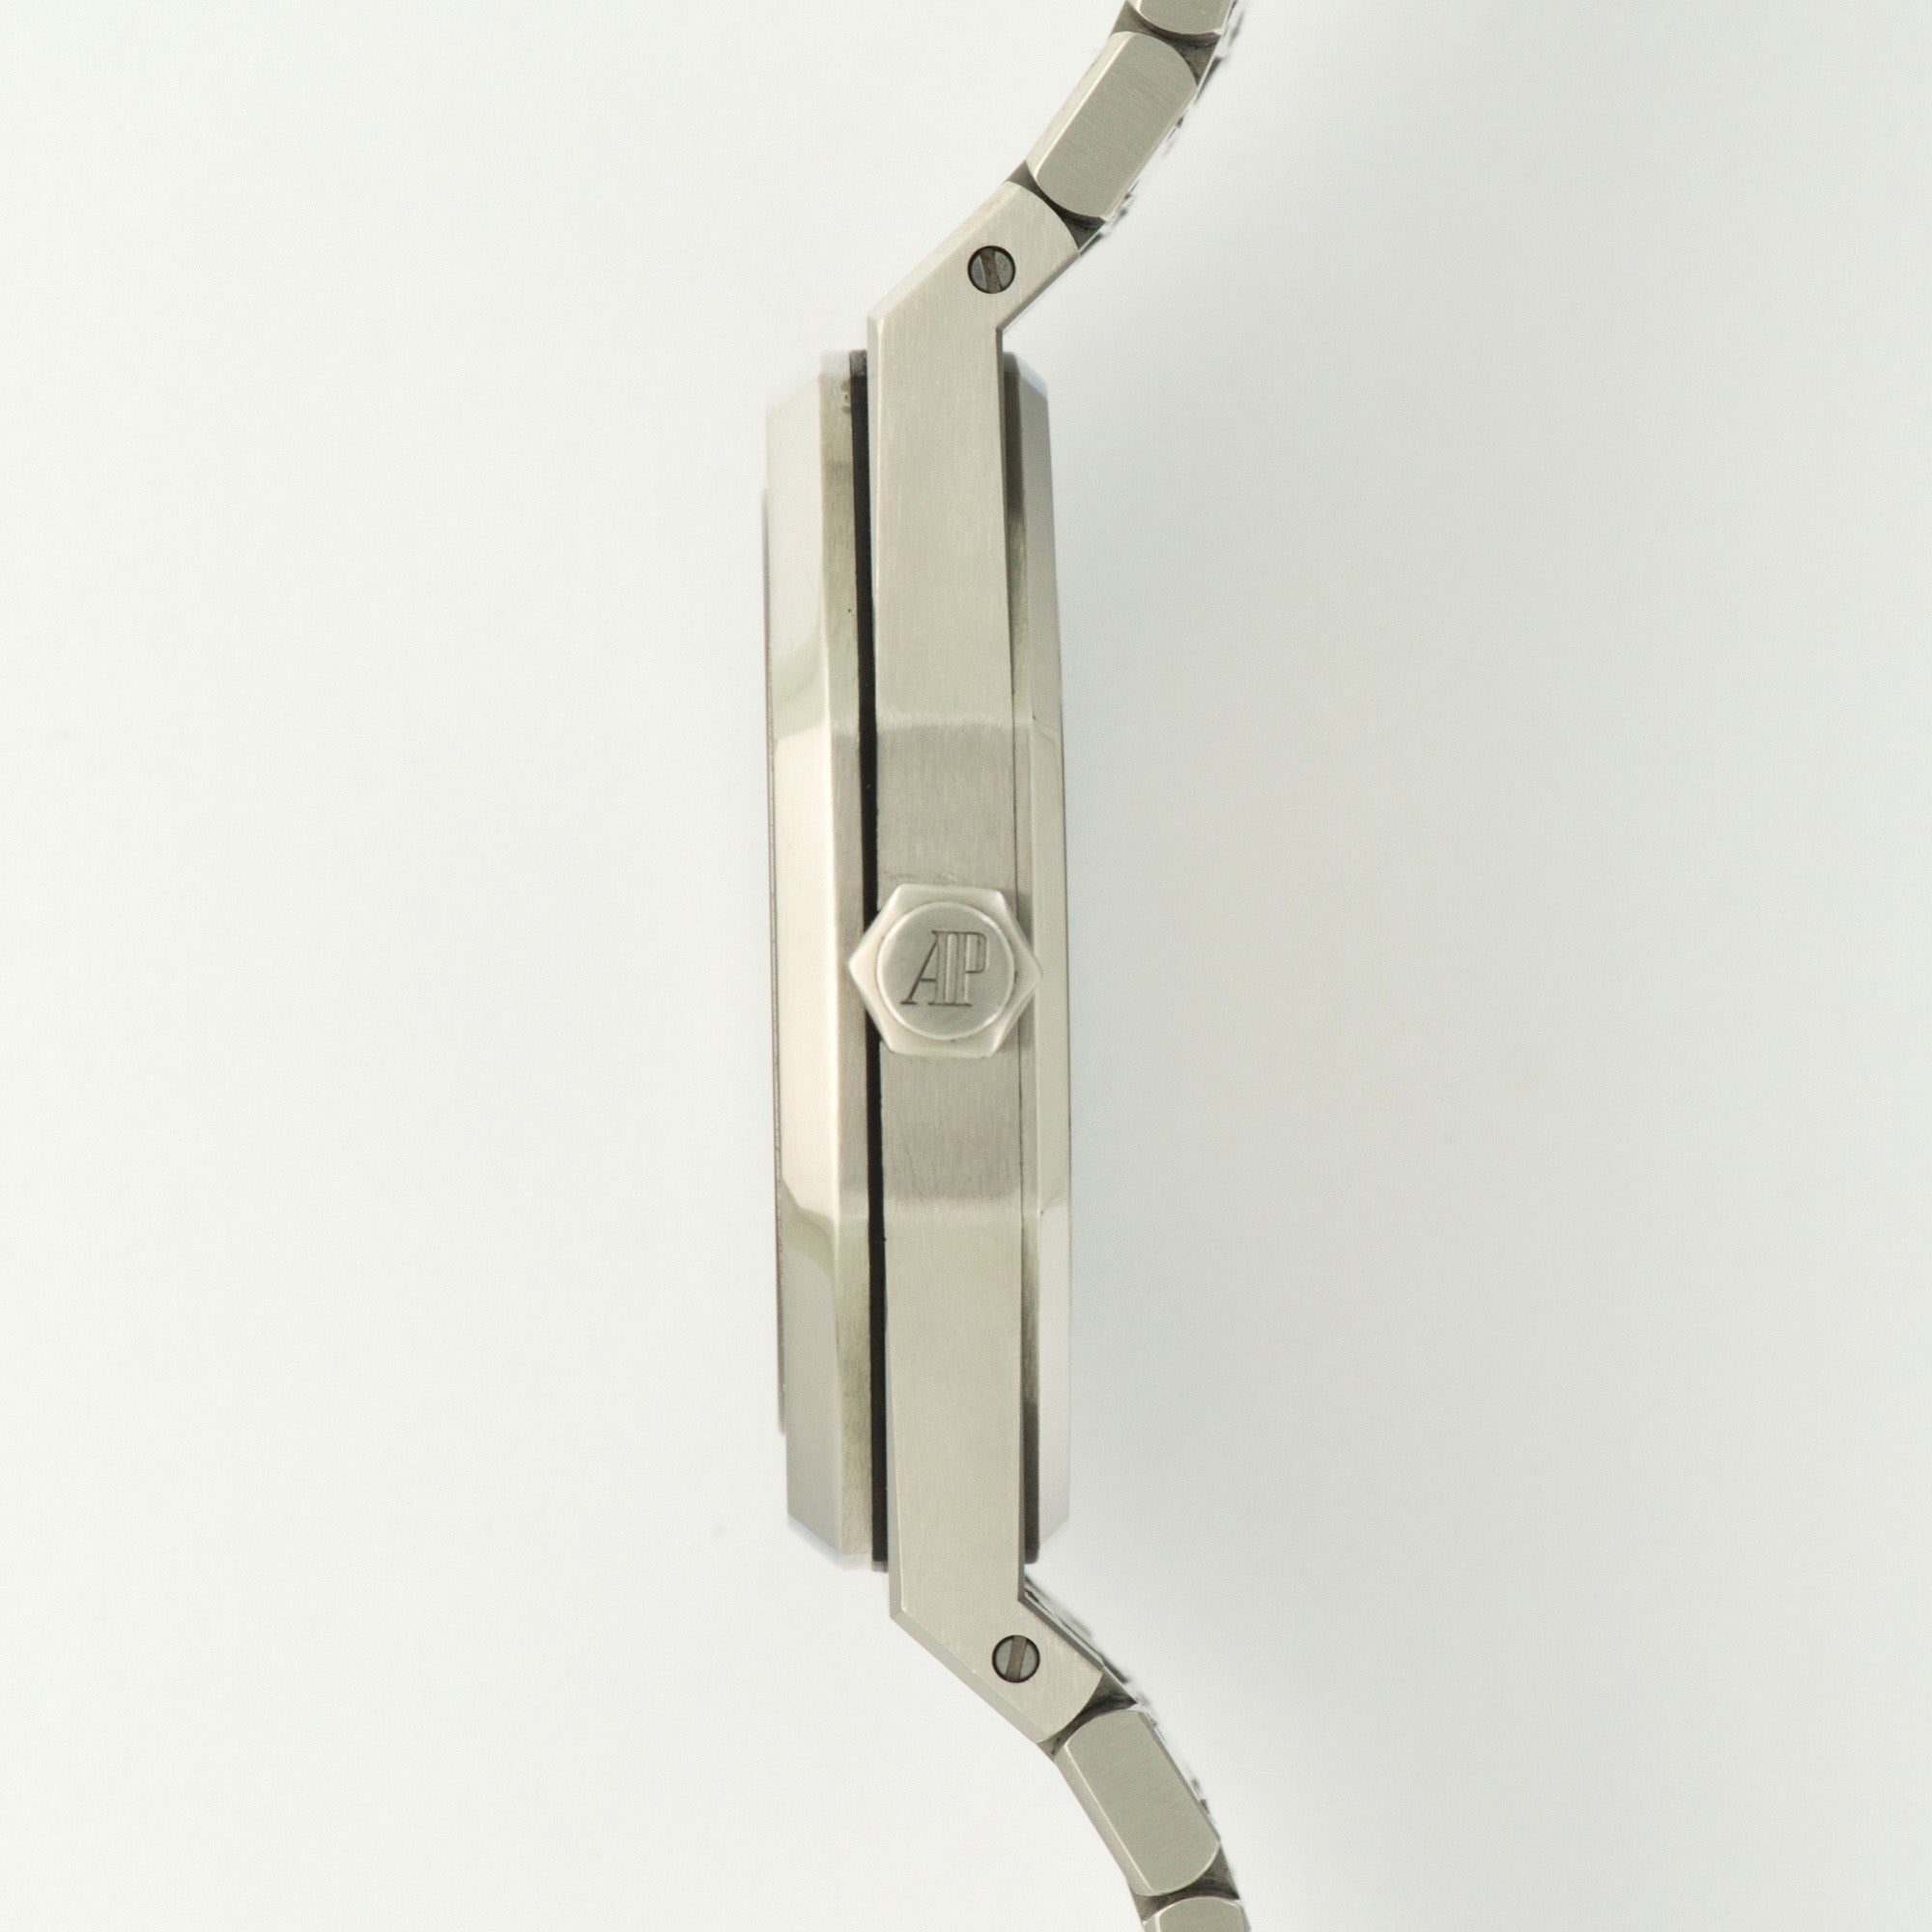 Audemars Piguet - Audemars Piguet Royal Oak 41mm Watch Ref. 15400 - The Keystone Watches